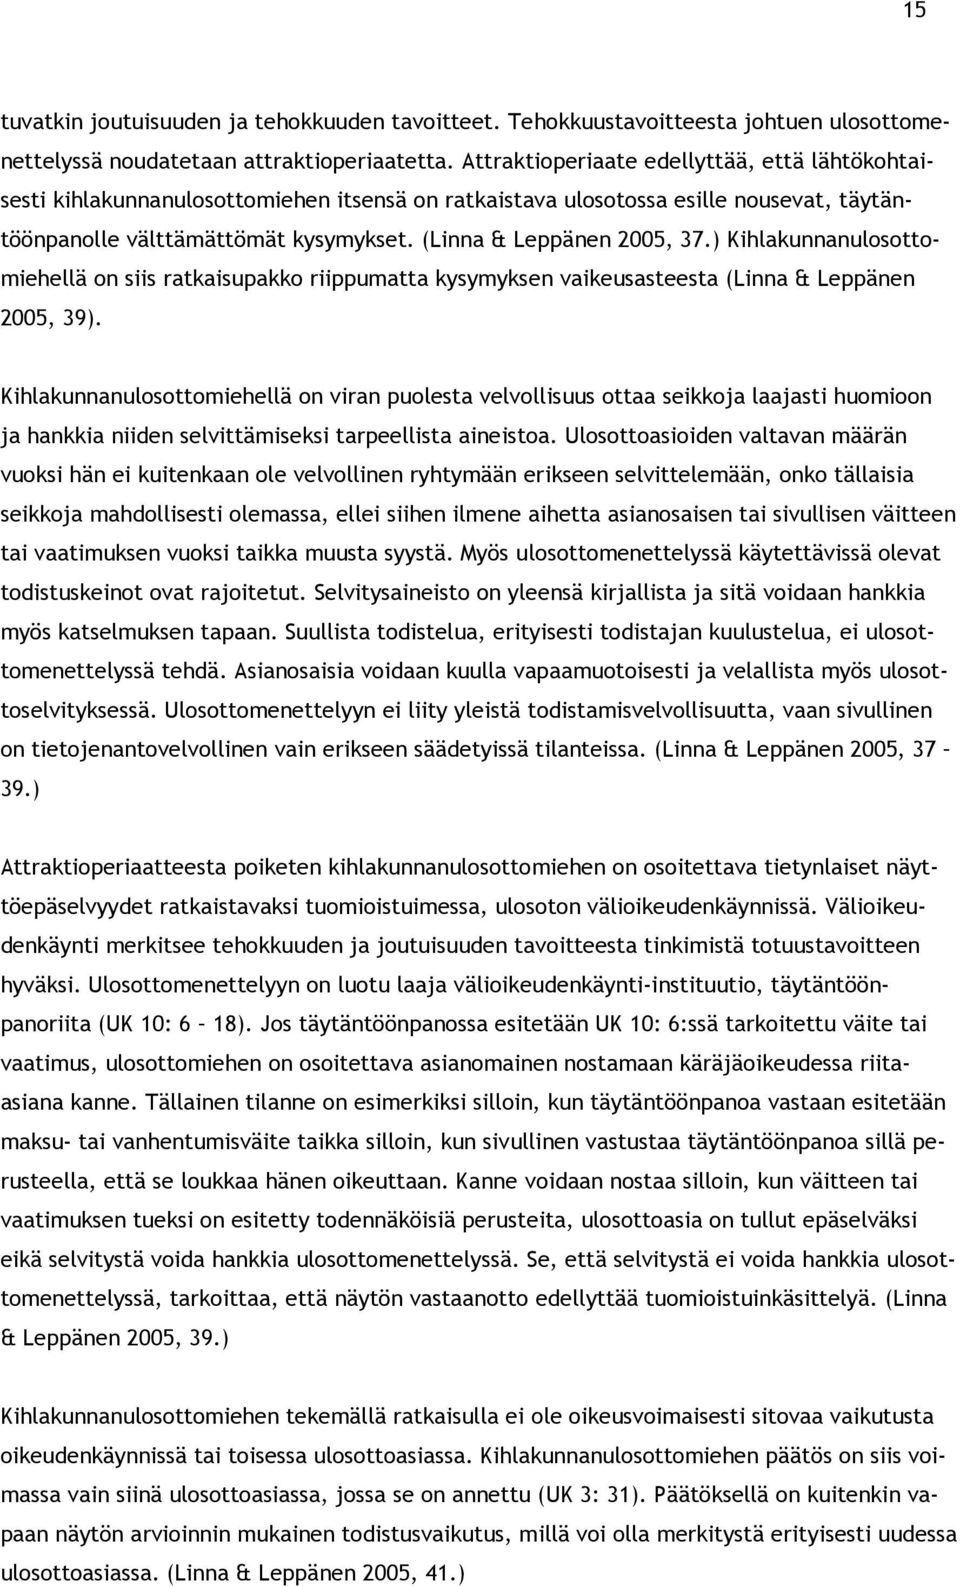 (Linna & Leppänen 2005, 37.) Kihlakunnanulosottomiehellä on siis ratkaisupakko riippumatta kysymyksen vaikeusasteesta (Linna & Leppänen 2005, 39).